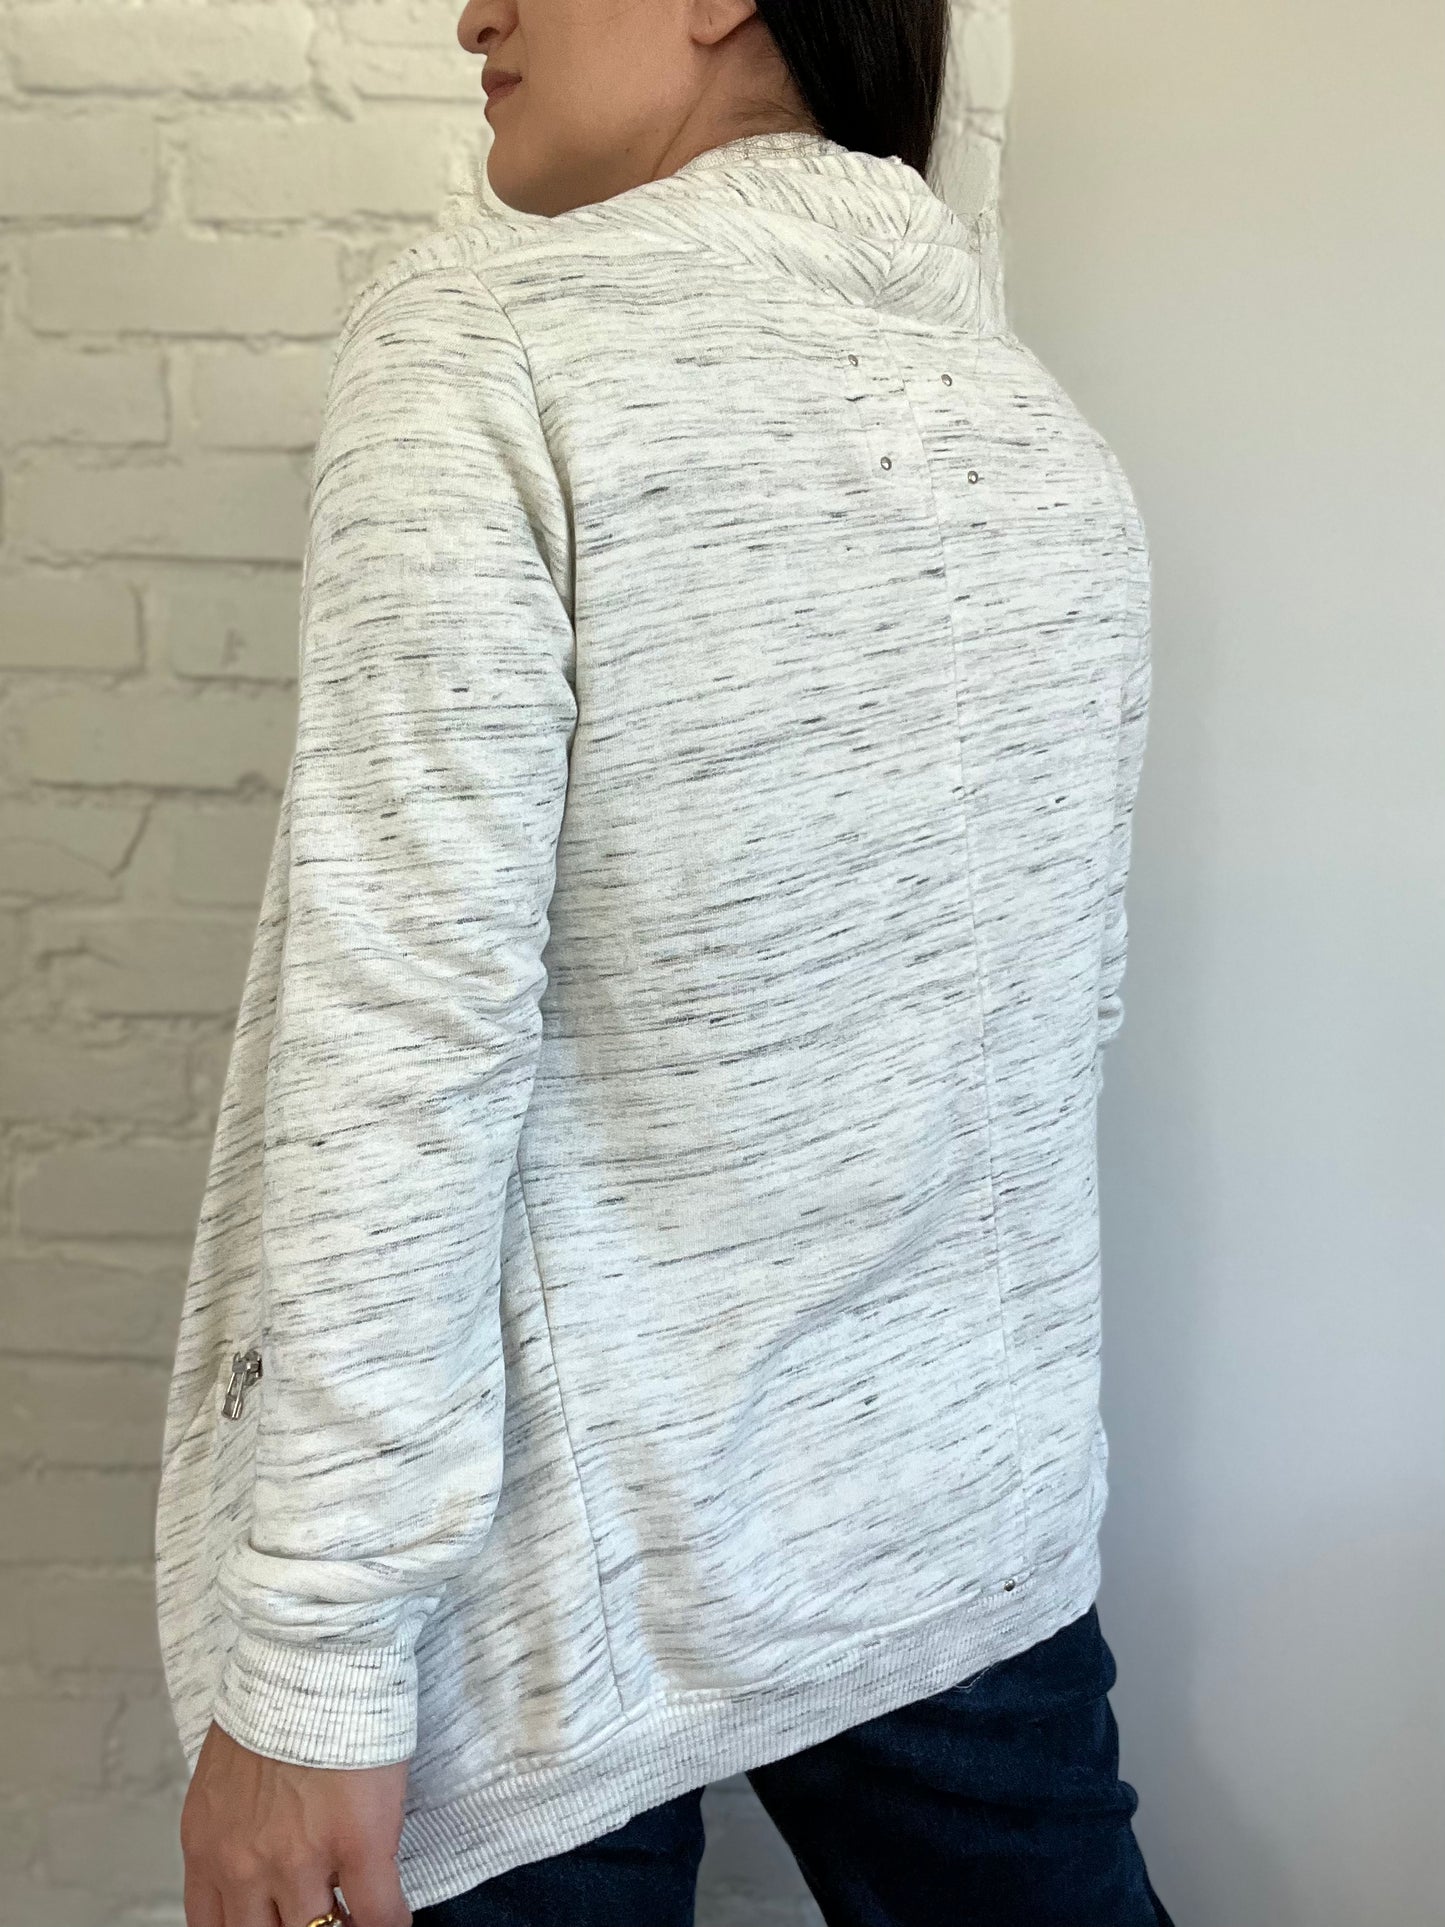 Wilfred Free Rosseau Sweater - Size XS